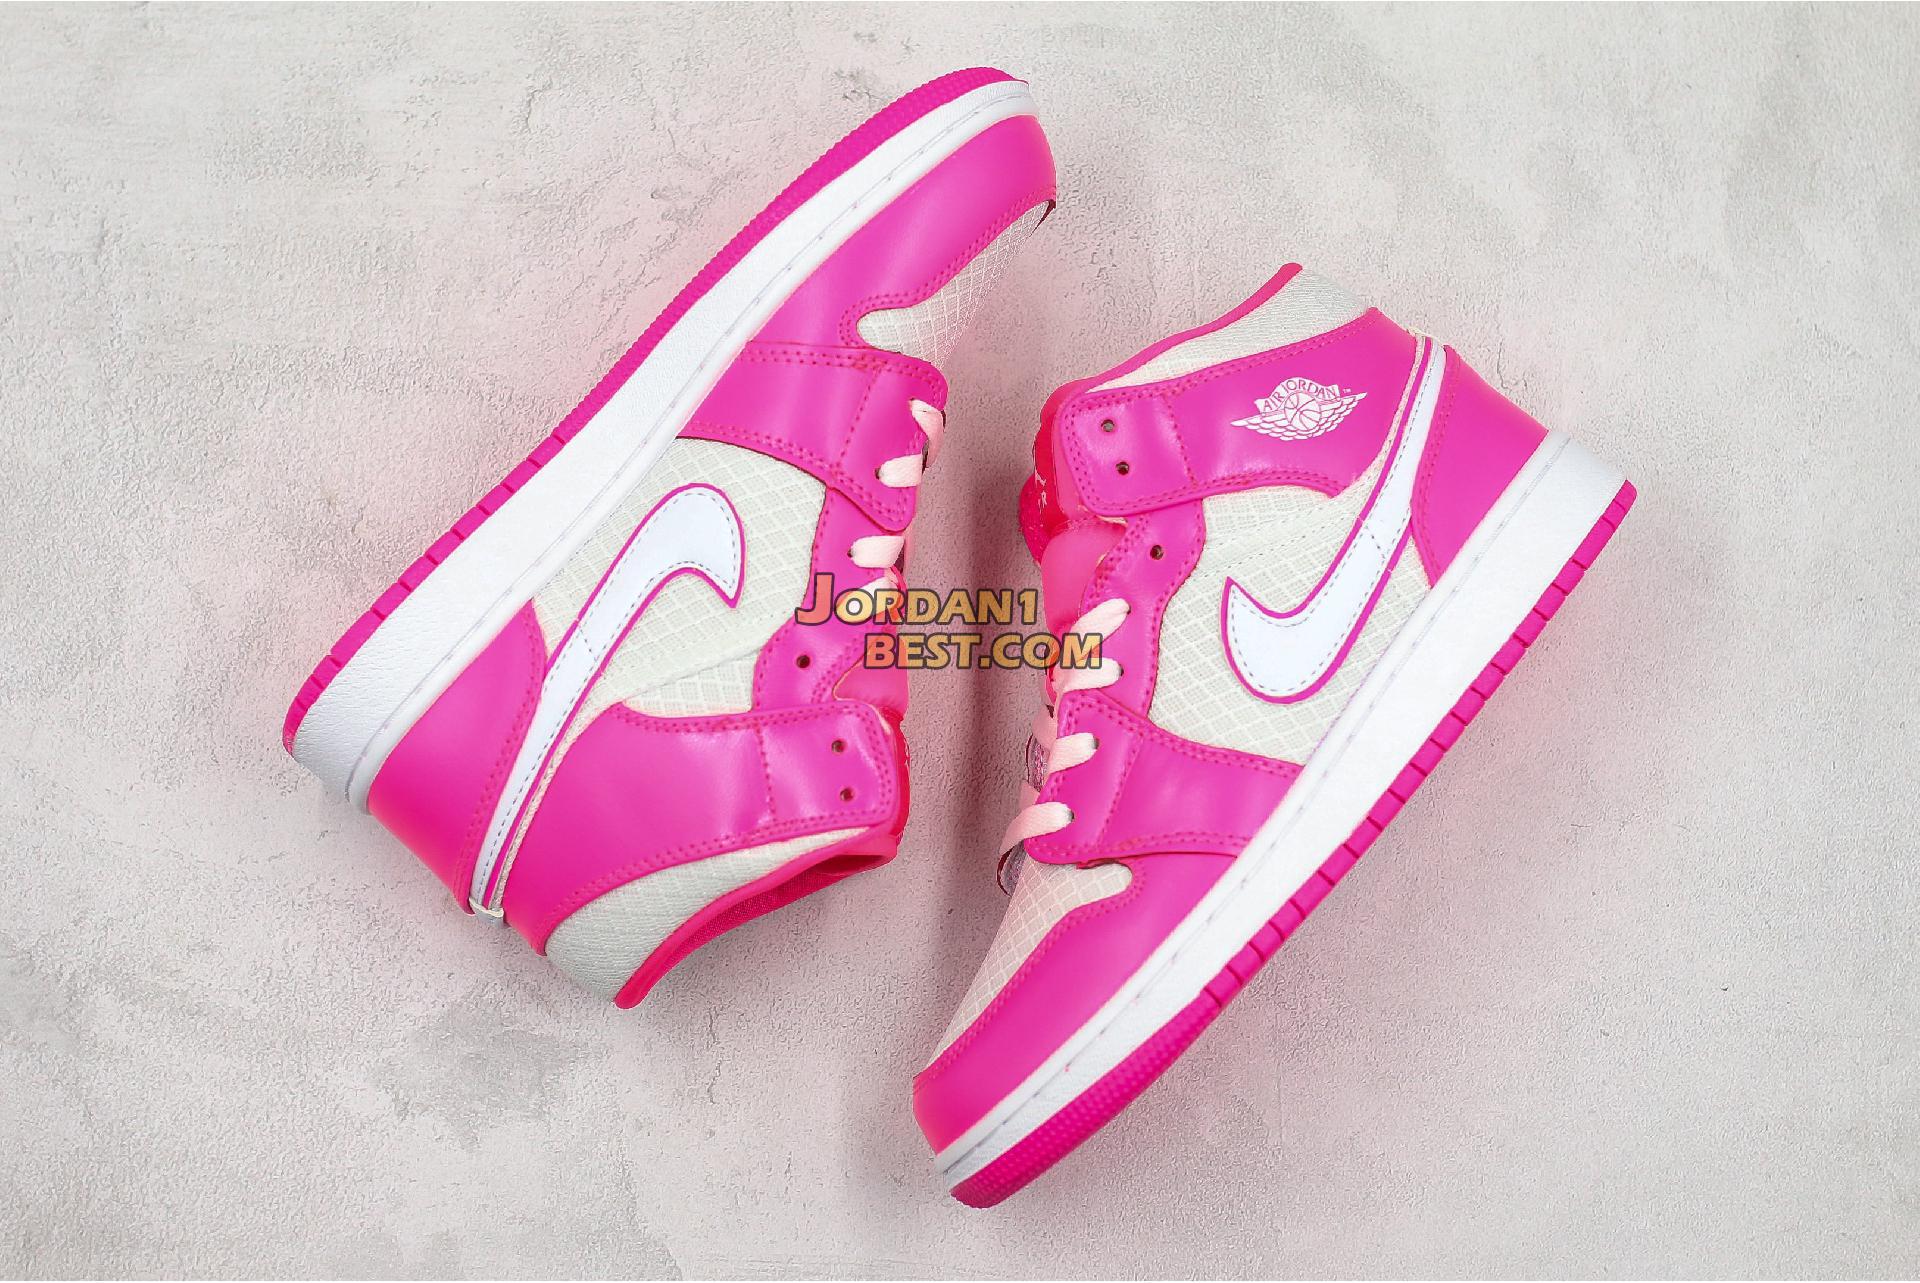 Air Jordan 1 Mid GS "Hyper Pink" 555112-611 Womens